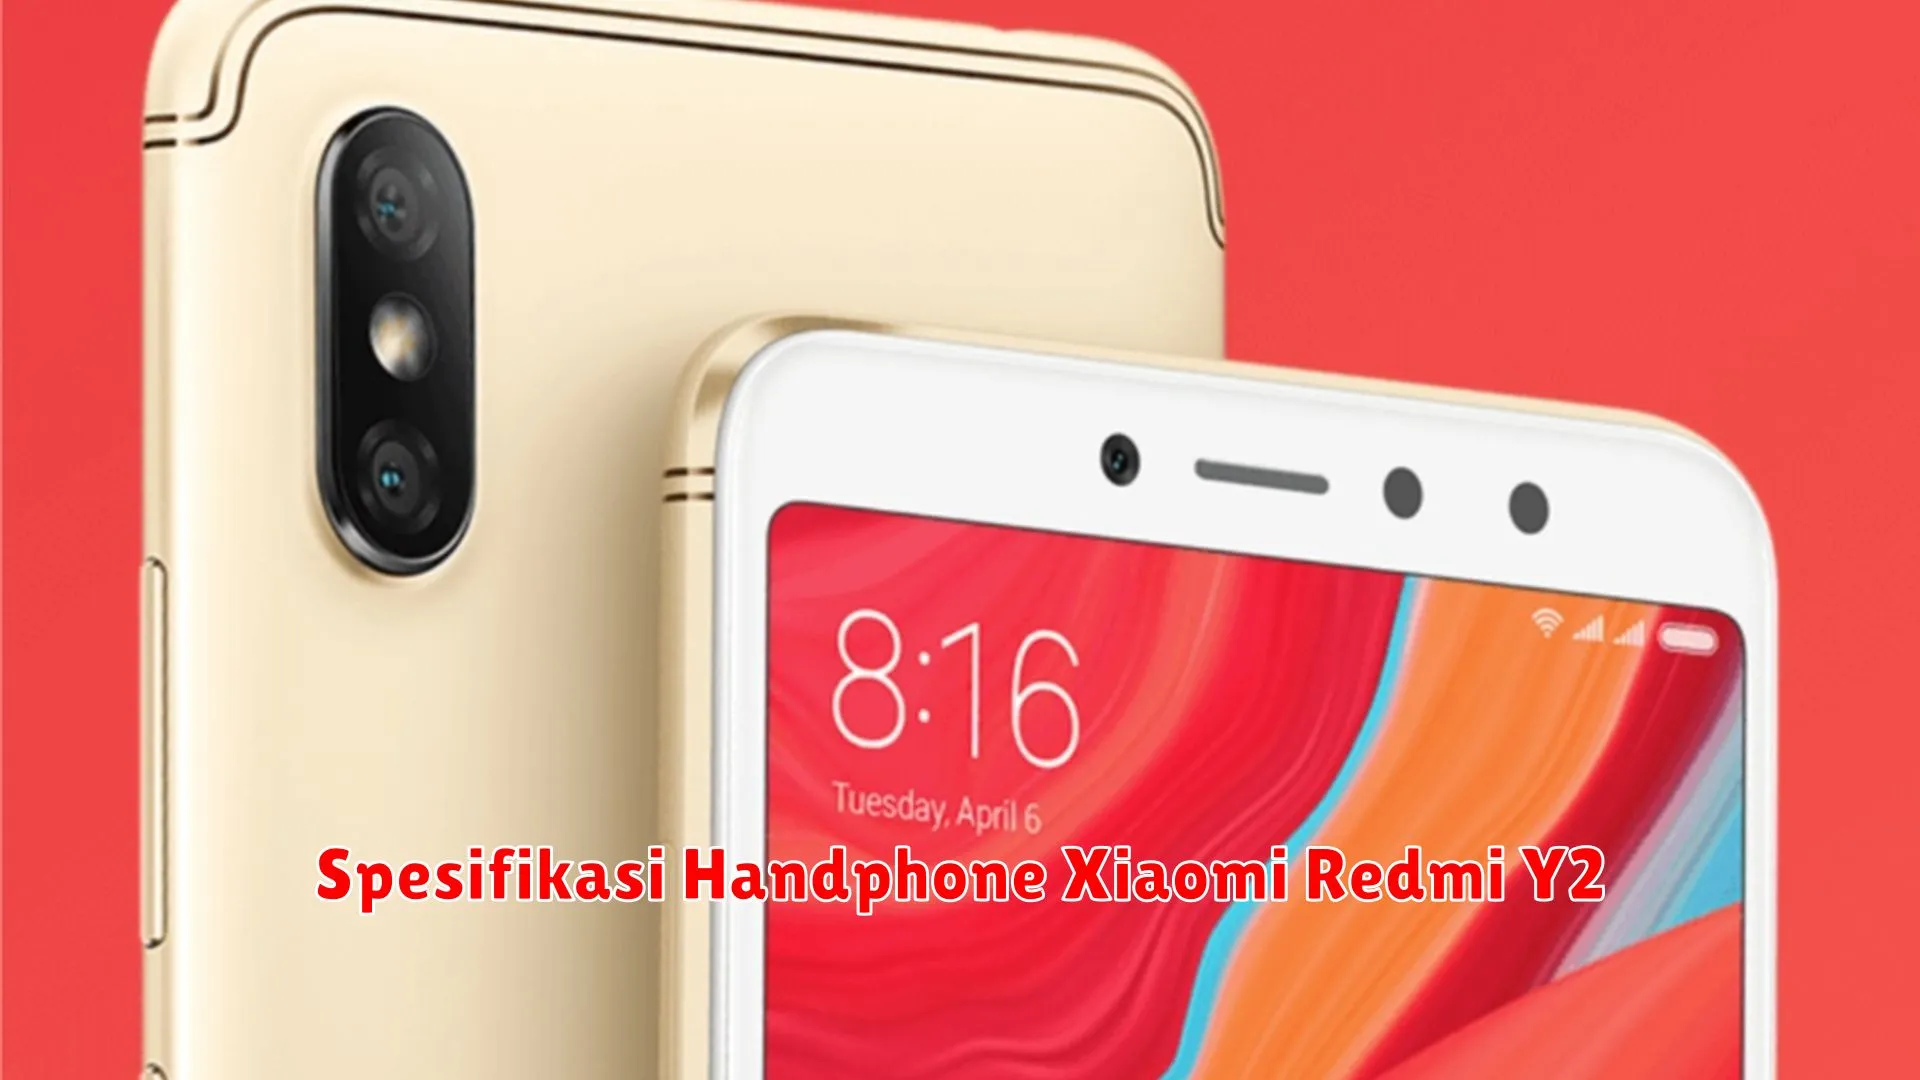 Spesifikasi Handphone Xiaomi Redmi Y2